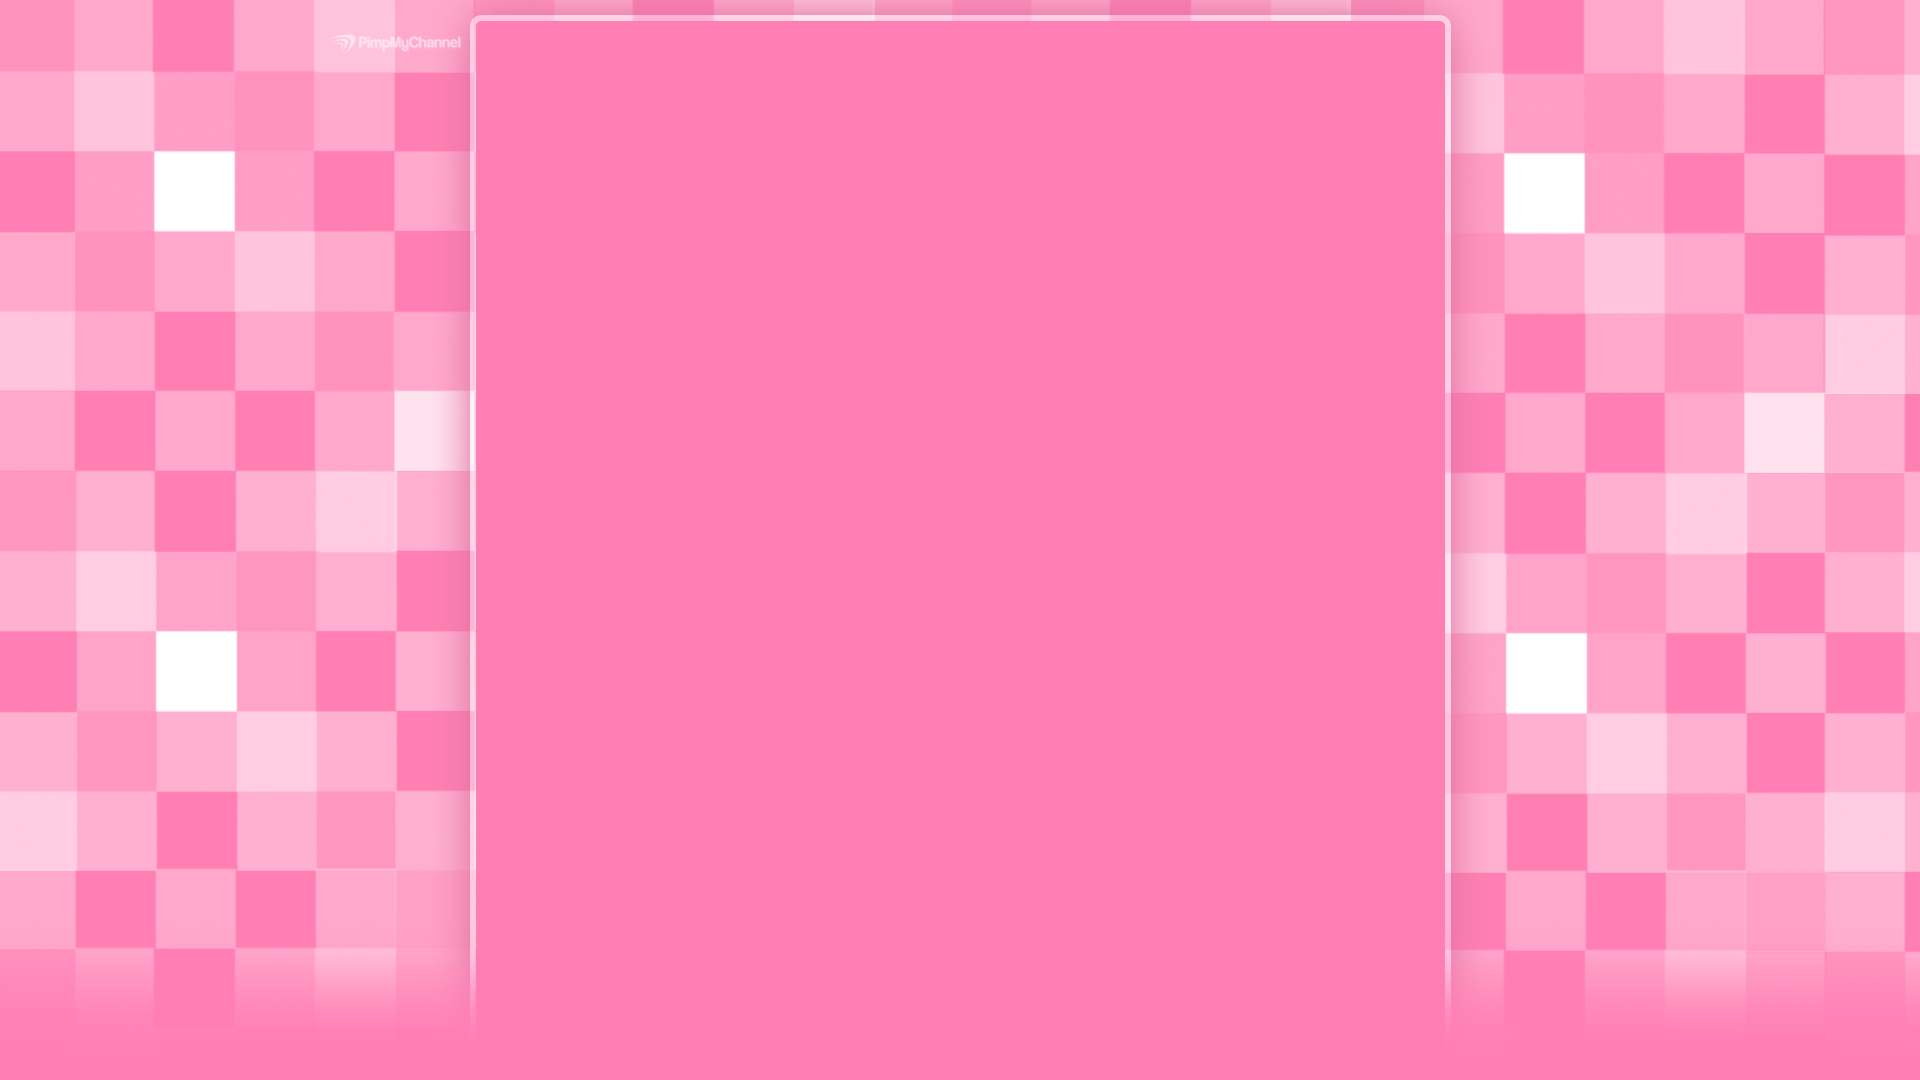 Màu hồng nhẹ nhàng và dịu dàng luôn là lựa chọn tuyệt vời cho hình nền. Hãy xem hình ảnh này để tận hưởng niềm vui và cảm giác sạch sẽ từ màu hồng. Hình nền này trông thật đẹp trên desktop của bạn.